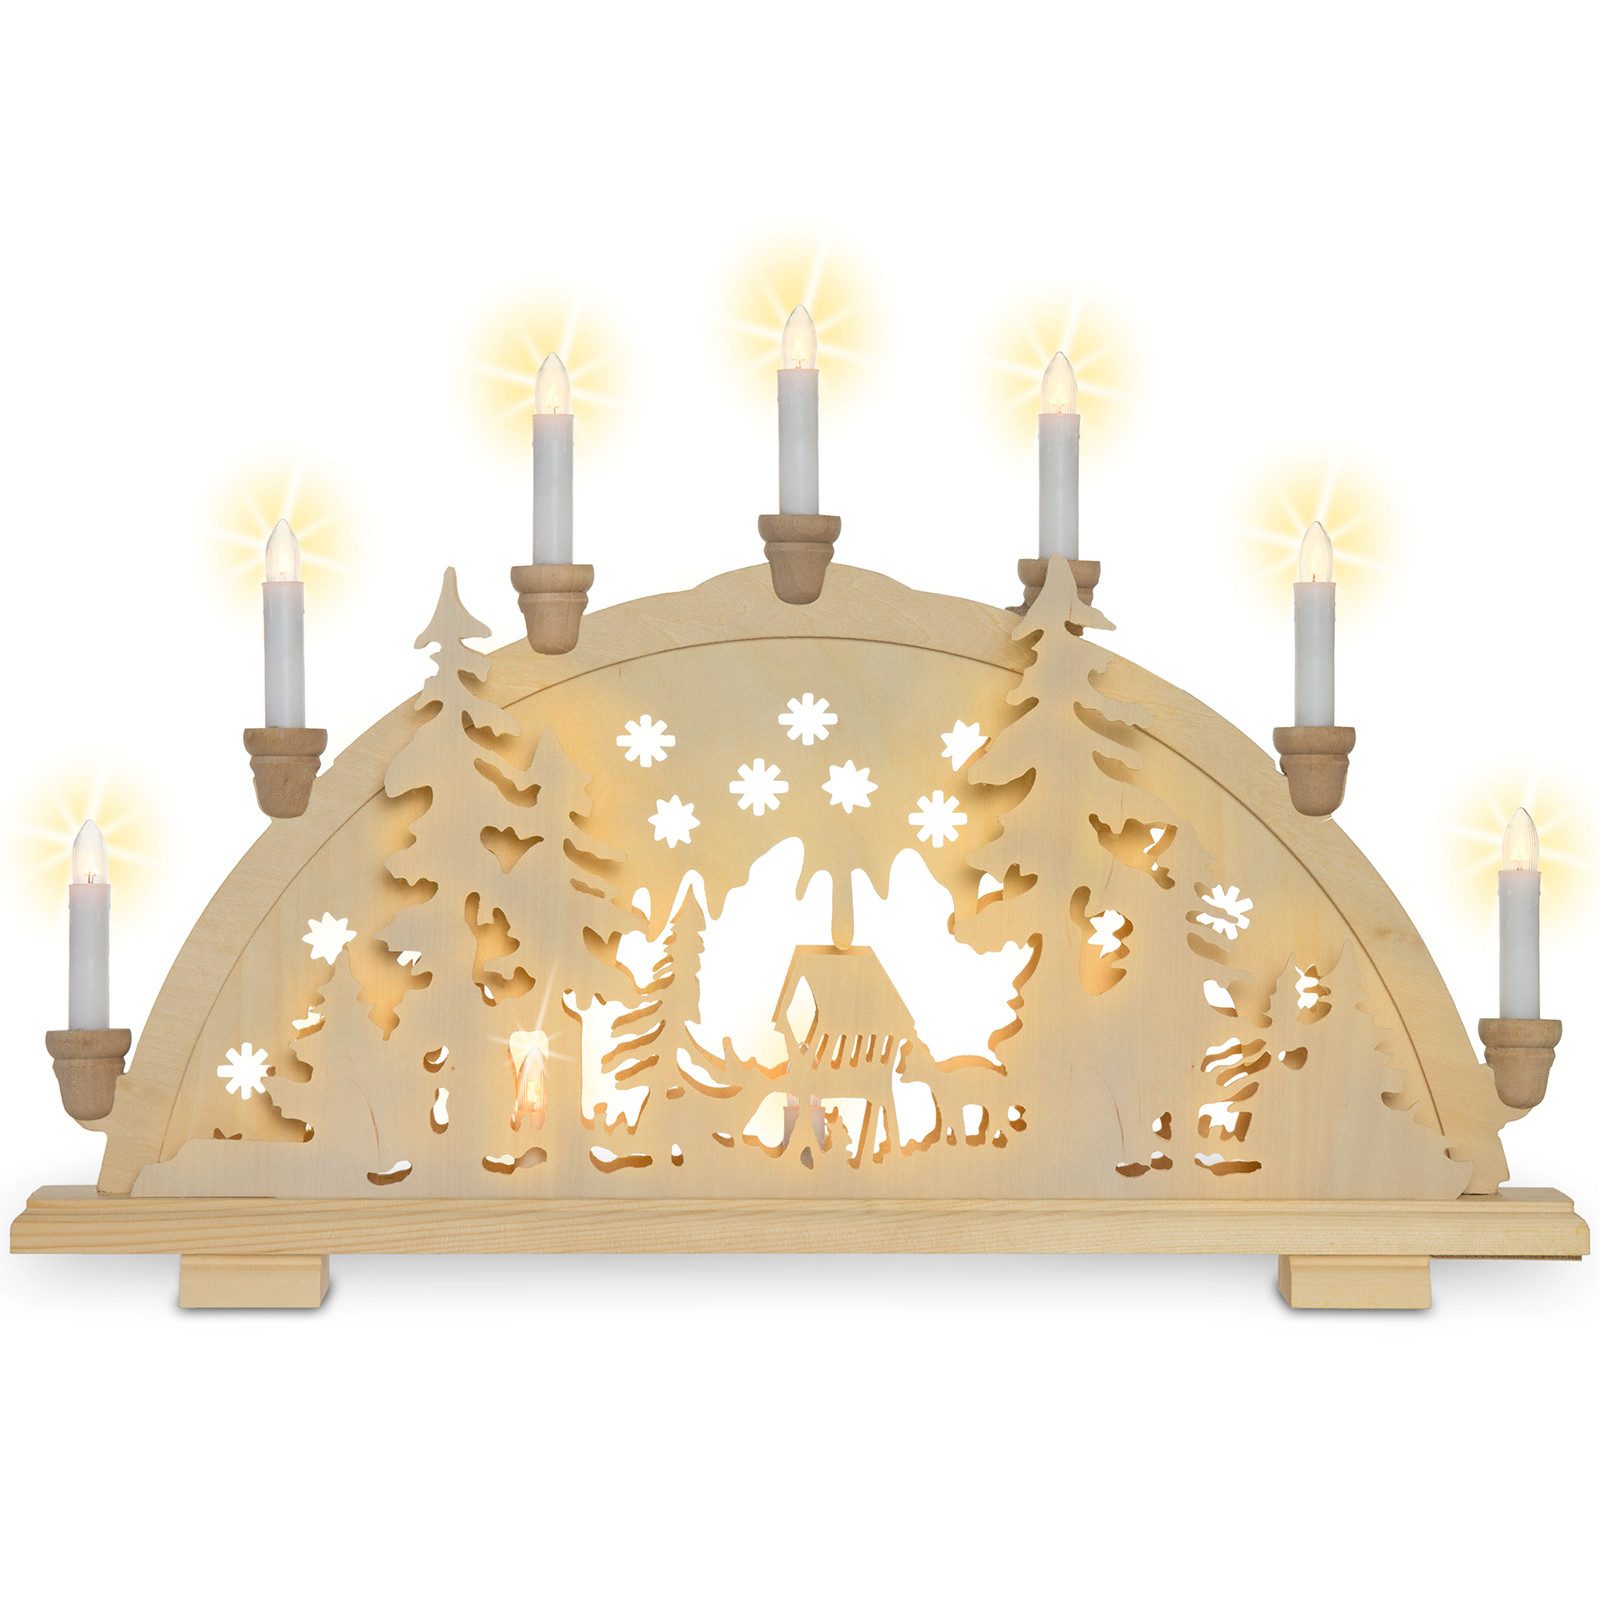 SIKORA Schwibbogen LB42 beleuchteter Holz Schwibbogen mit 7 Kerzen